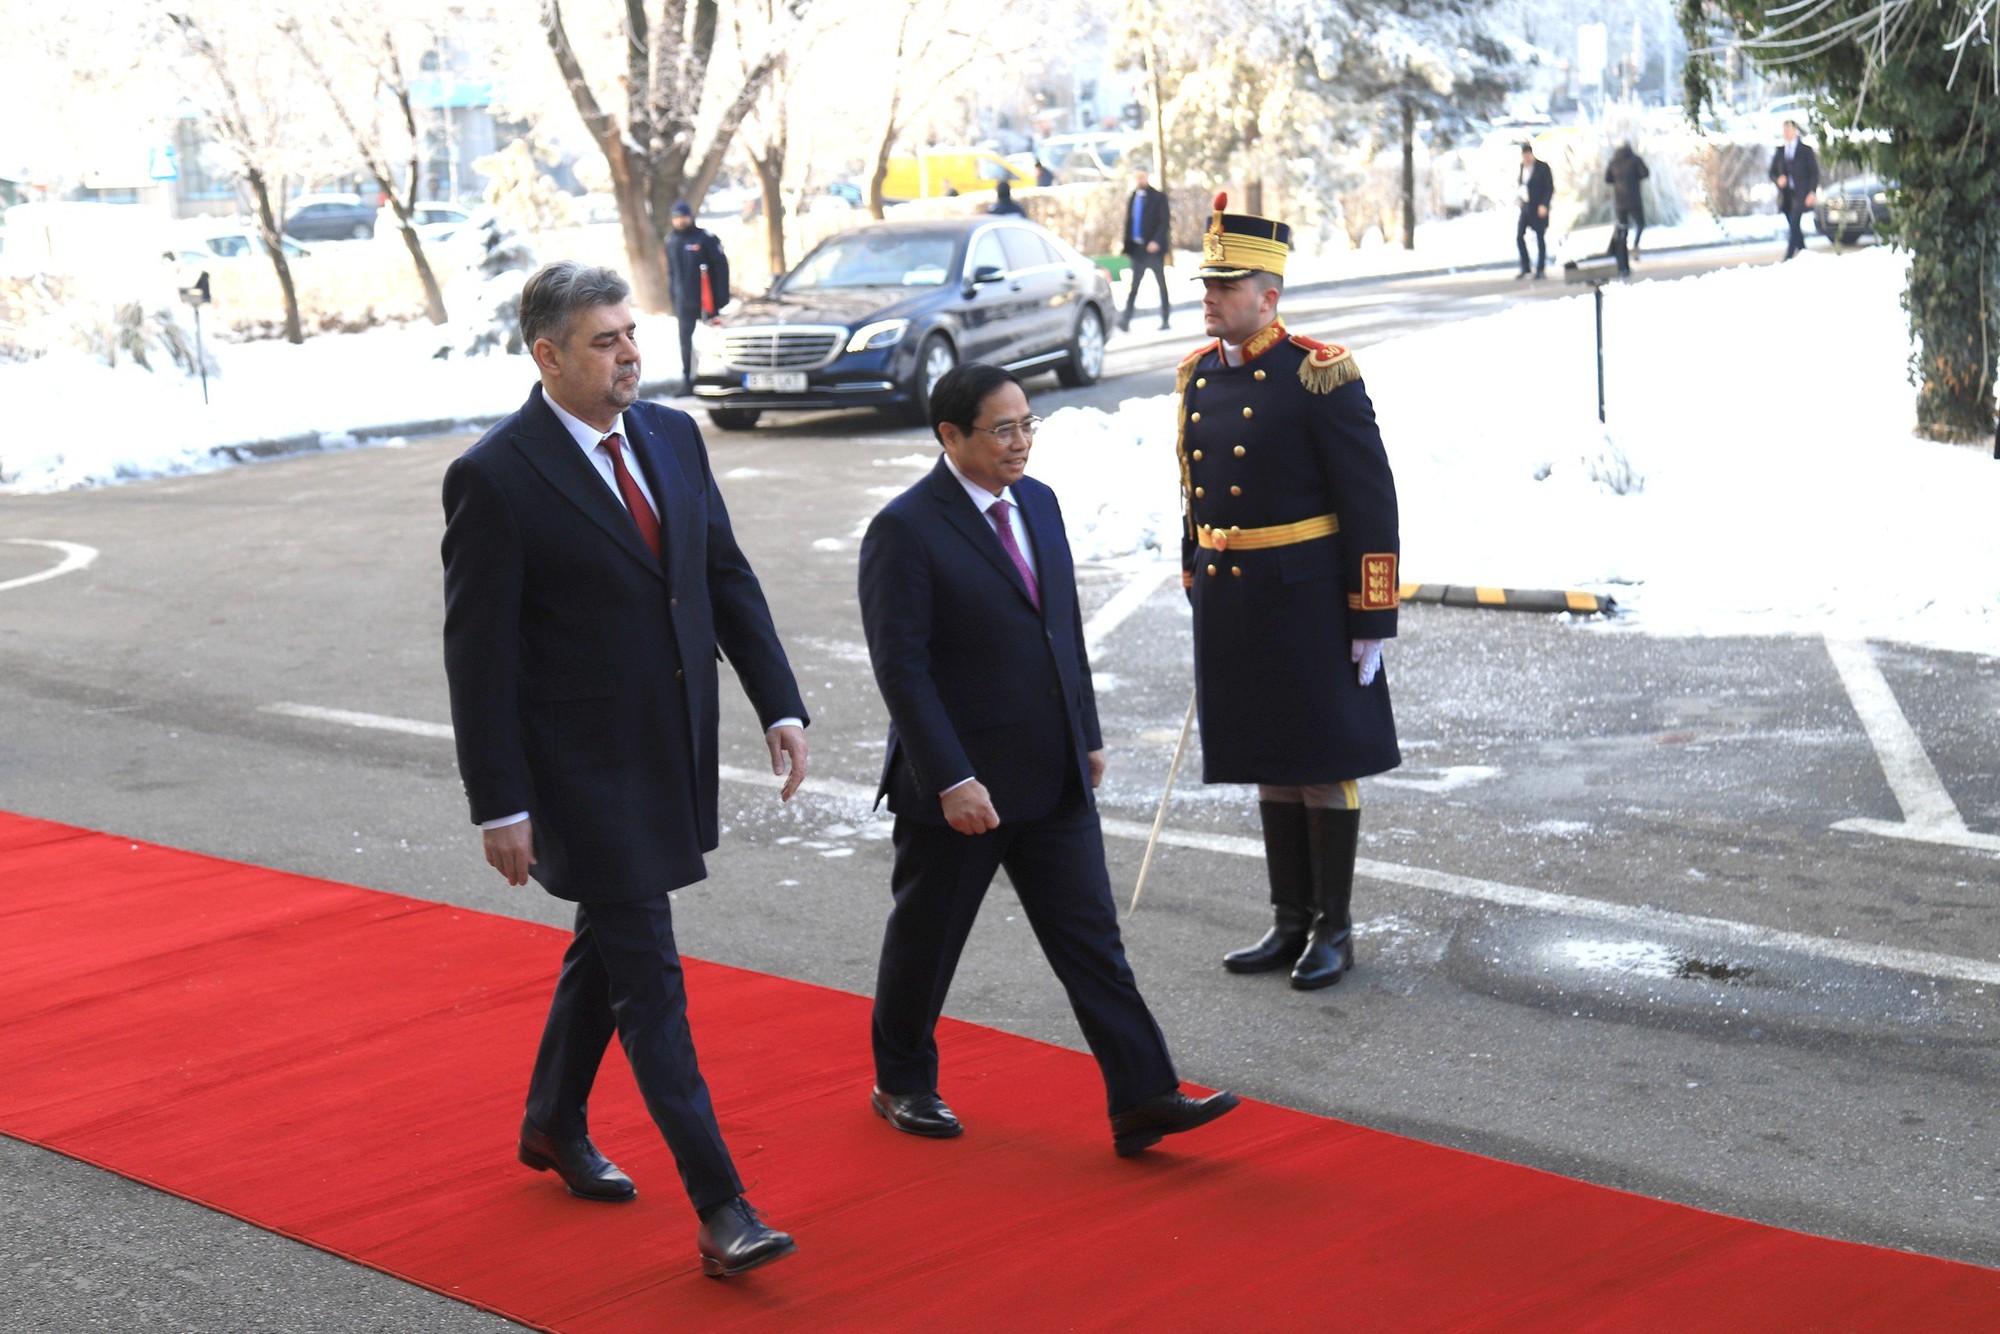 Chuyến thăm Romania lần này của Thủ tướng Phạm Minh Chính là hoạt động trao đổi đoàn đầu tiên ở cấp Thủ tướng Chính phủ giữa hai nước sau 5 năm - Ảnh: VGP/Nhật Bắc